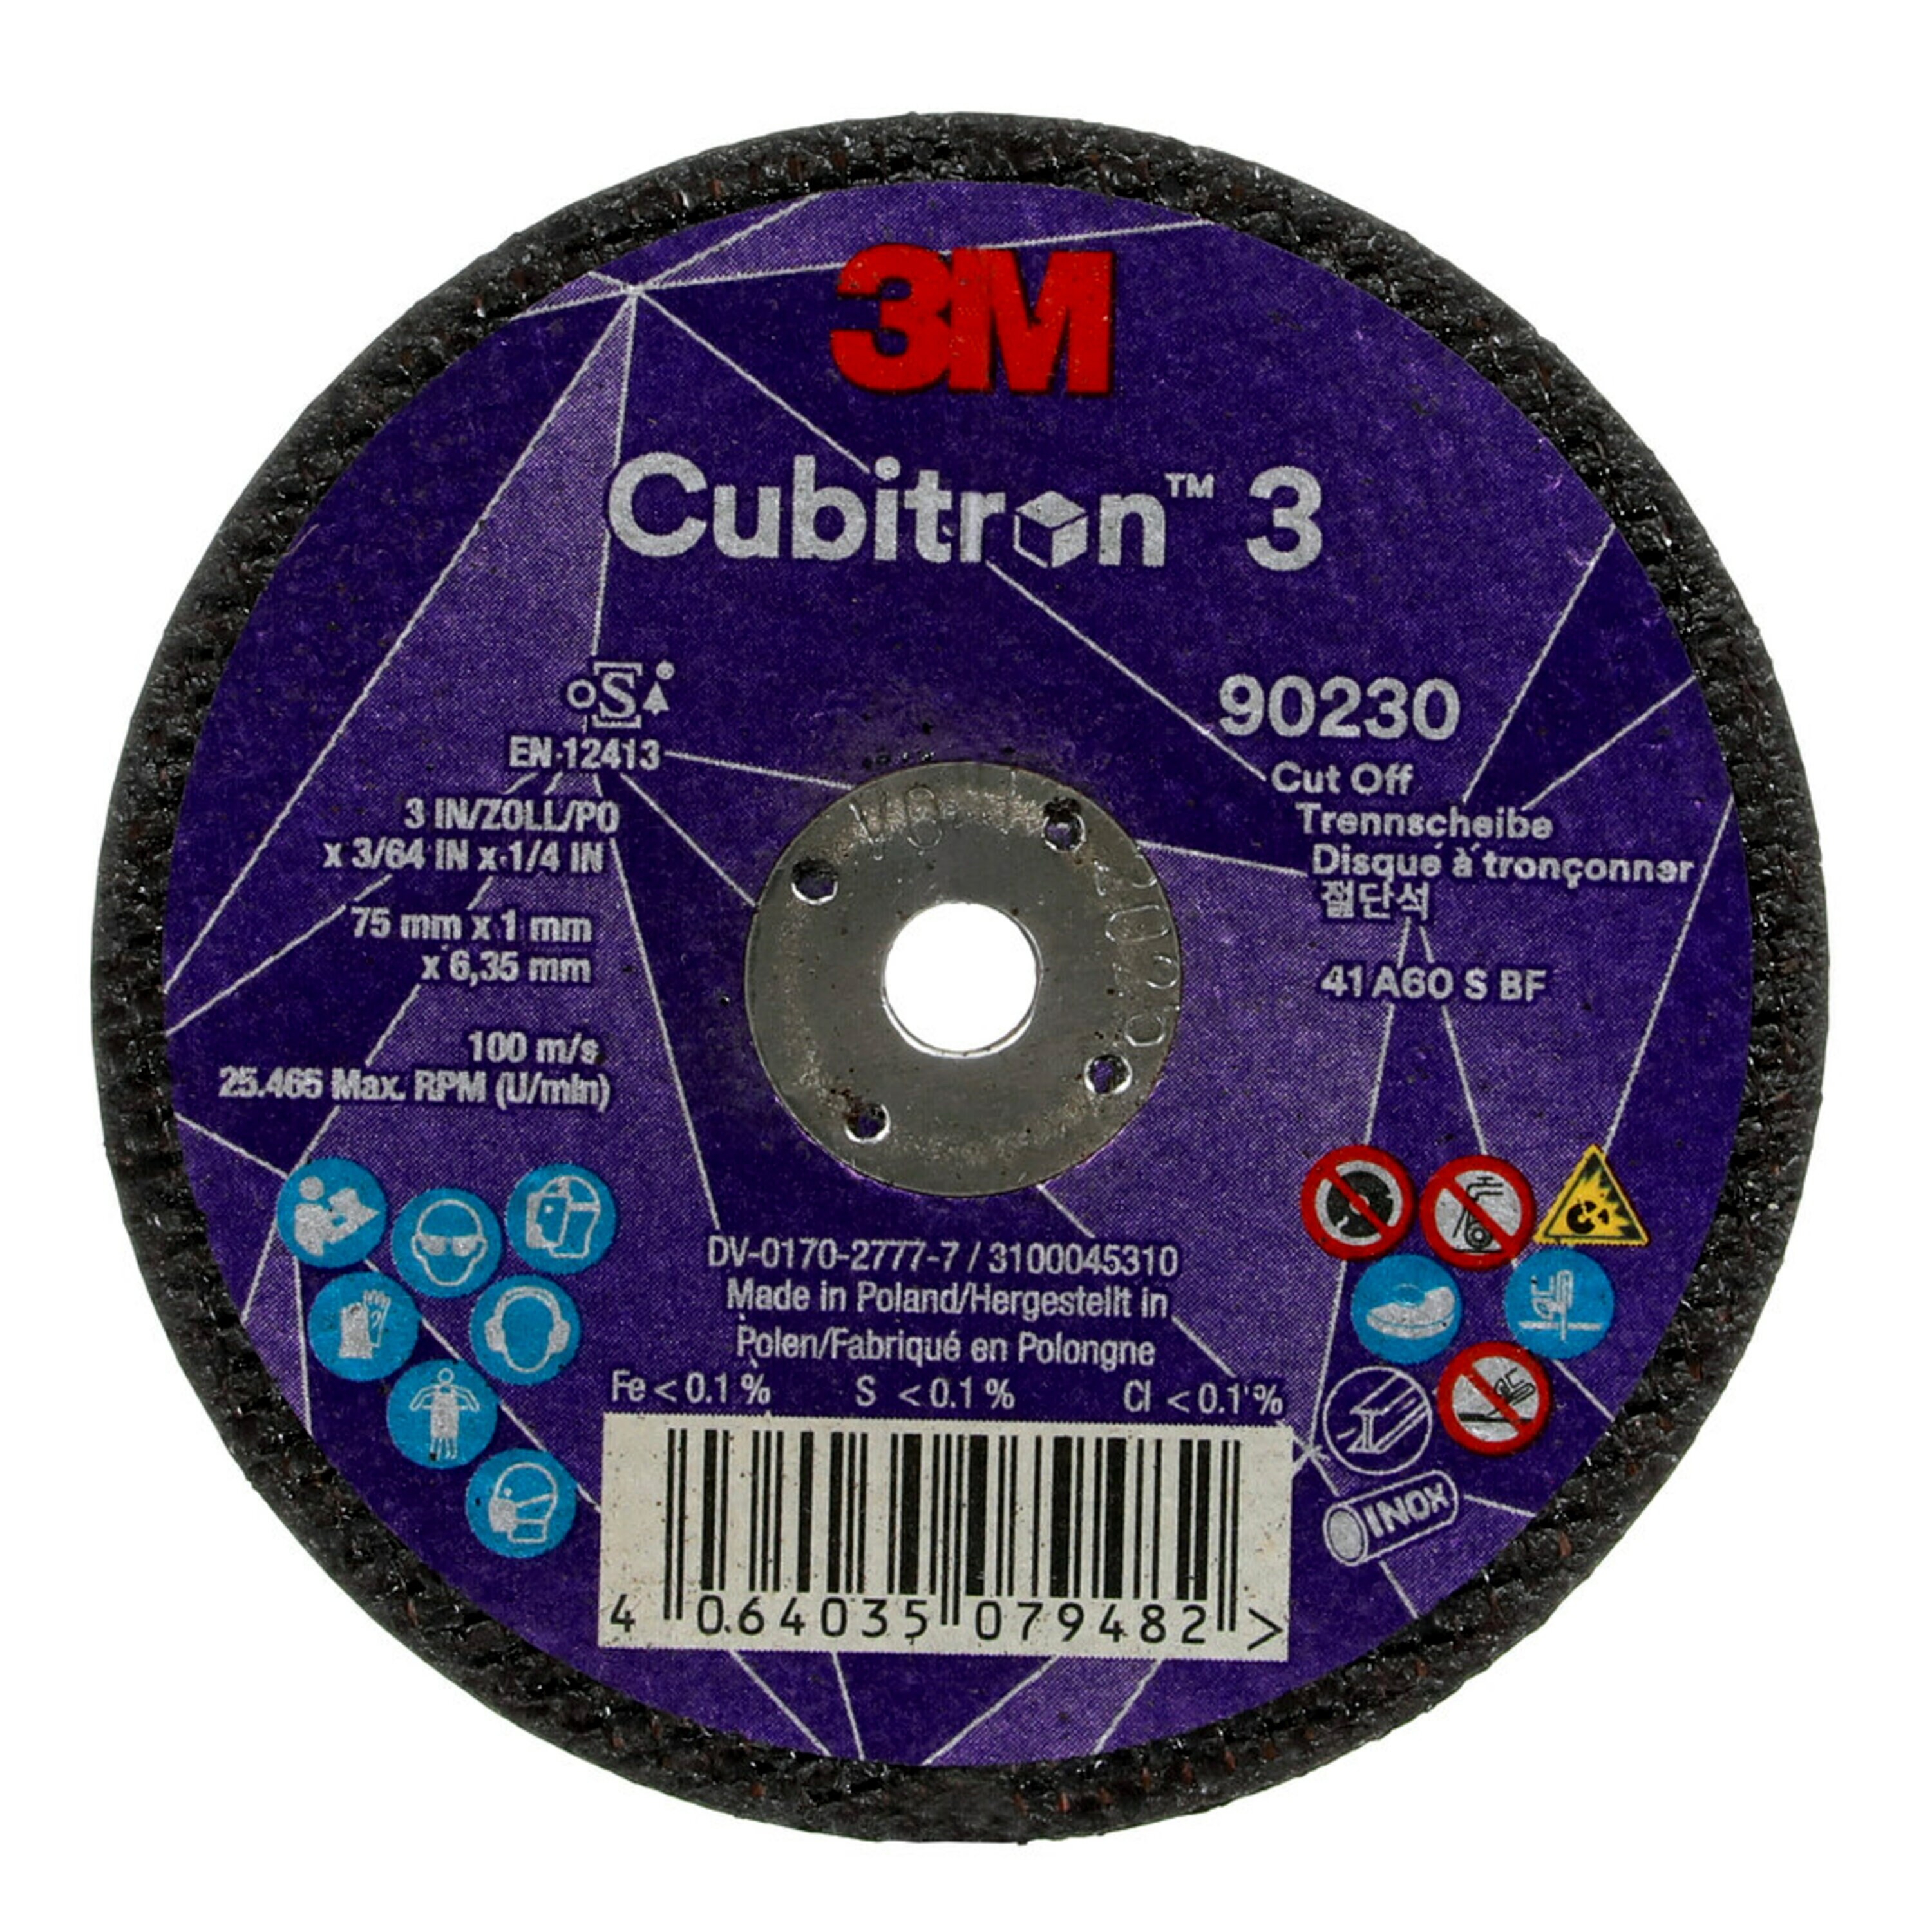 3M Cubitron 3 Disque à tronçonner, 75 mm, 1 mm, 6,35 mm, 60 , type 41 #90230